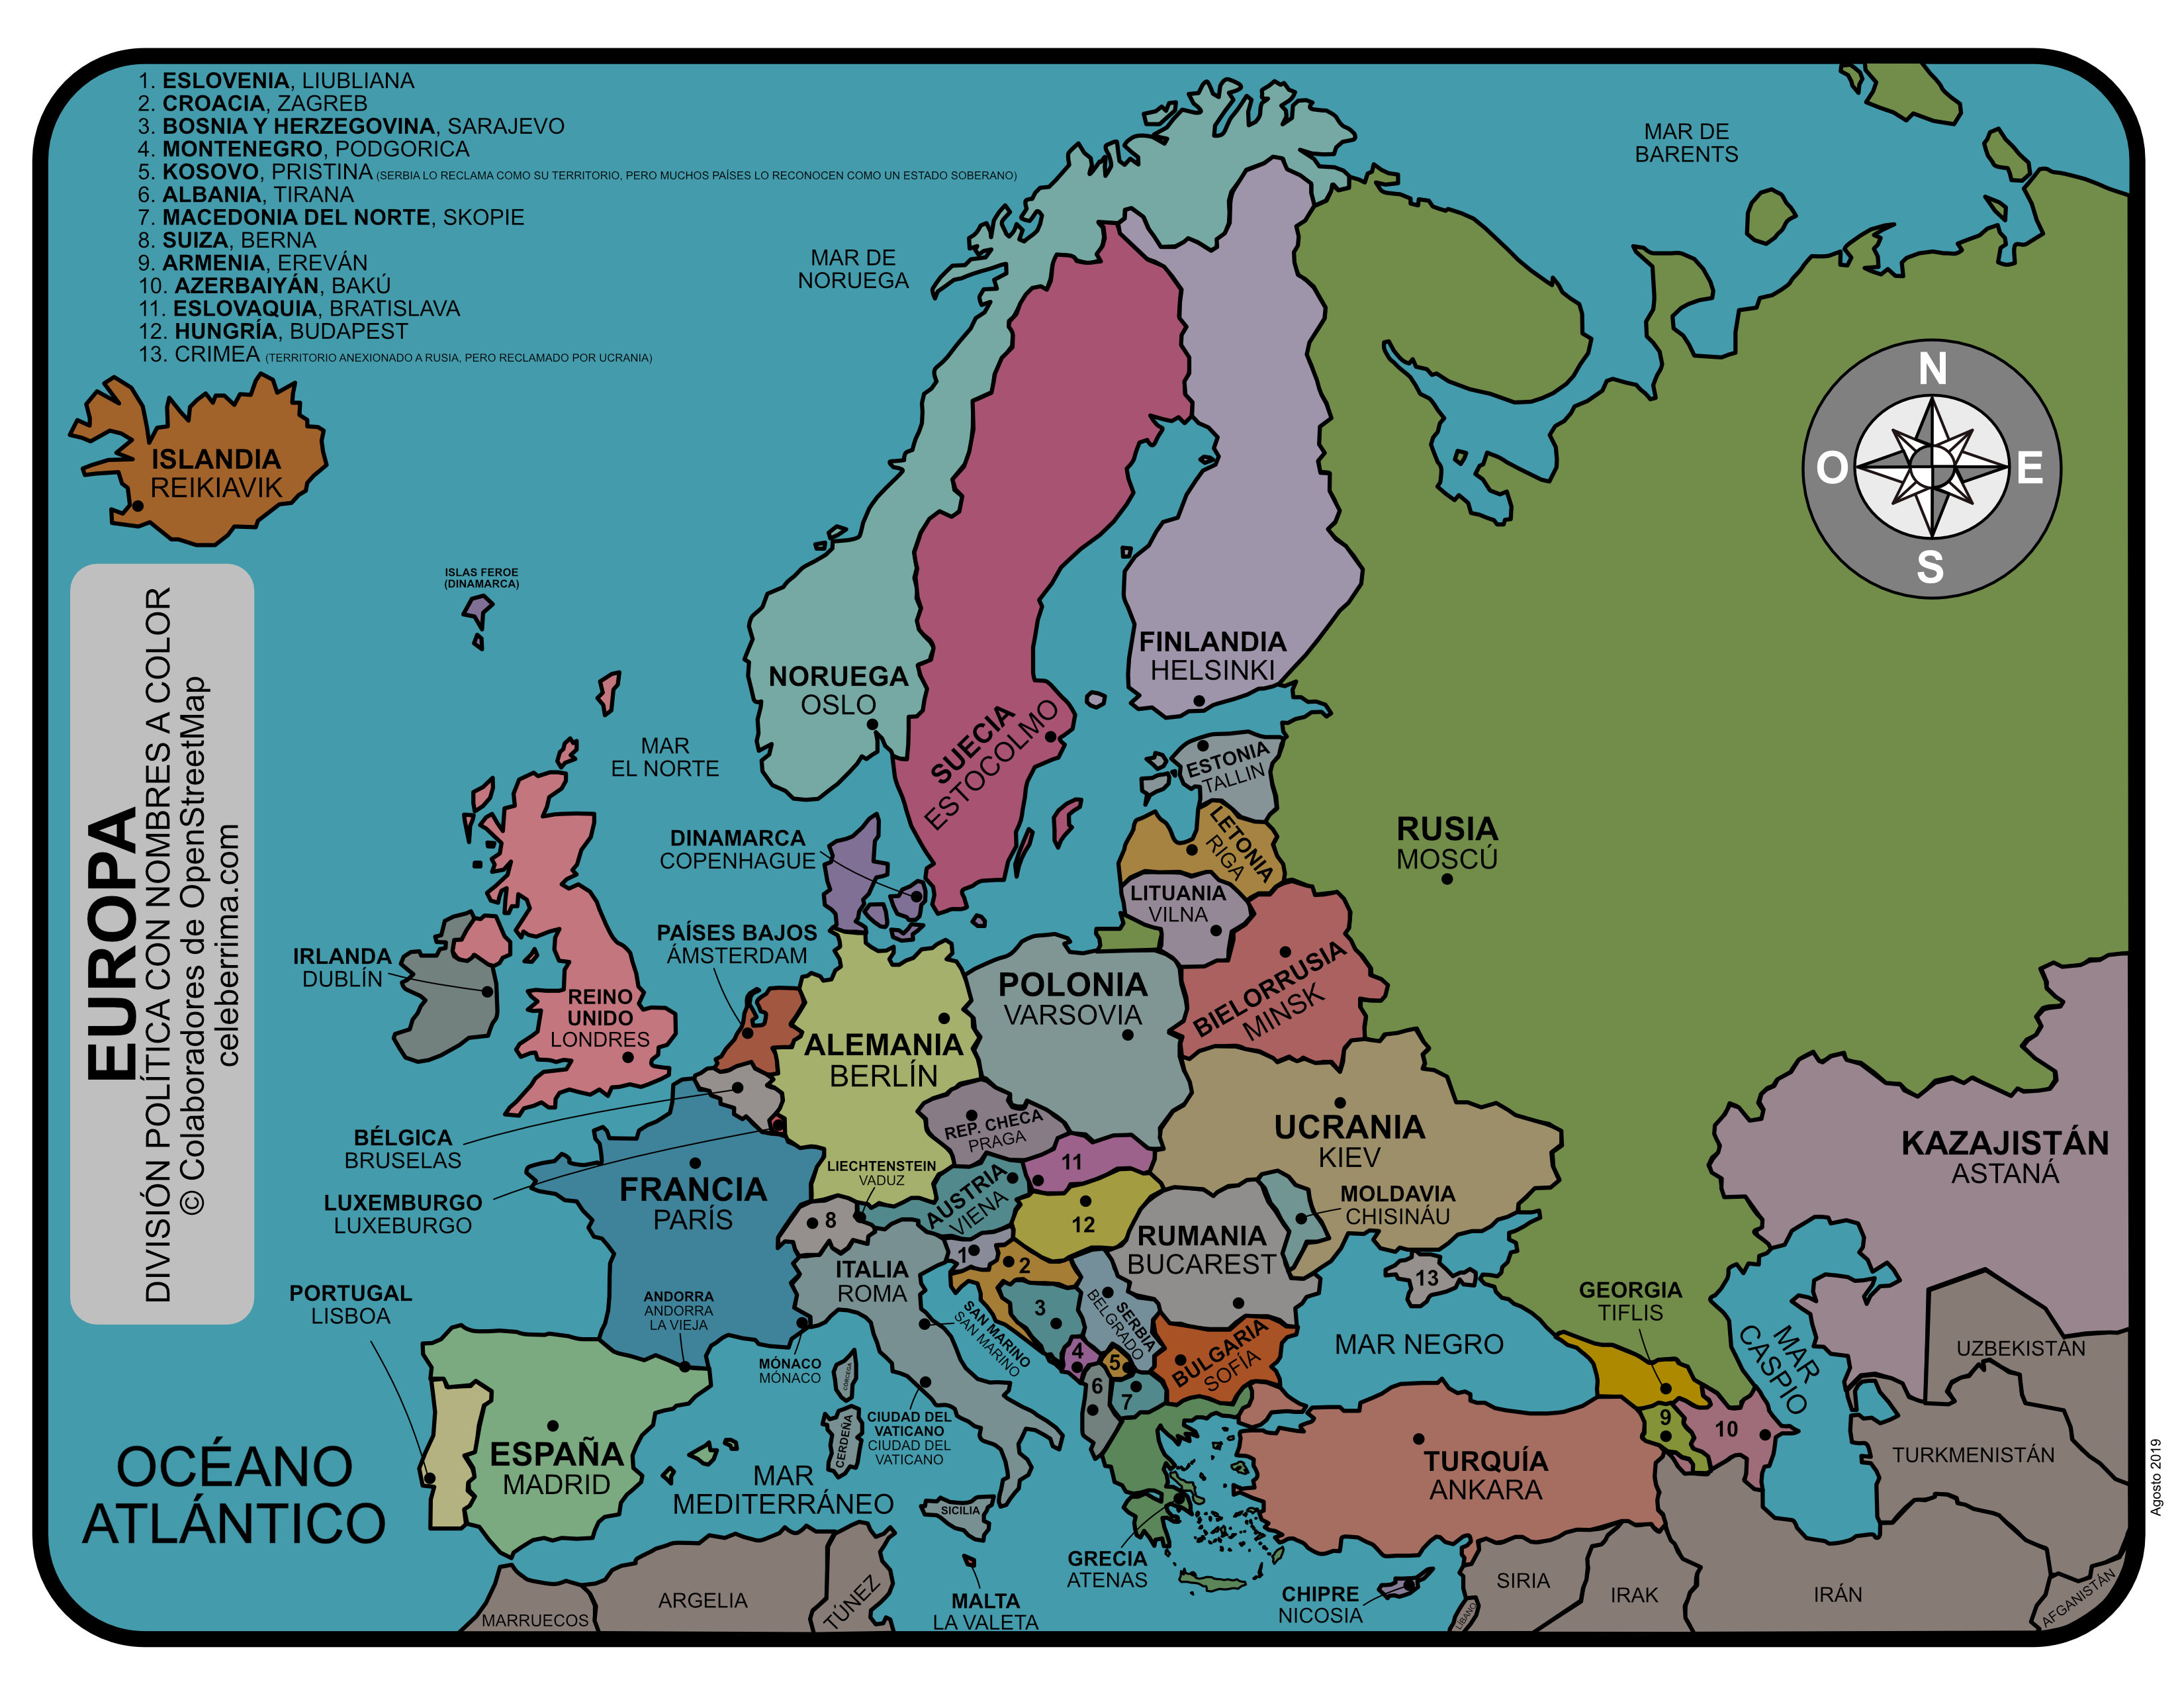 mapa de europa con nombres